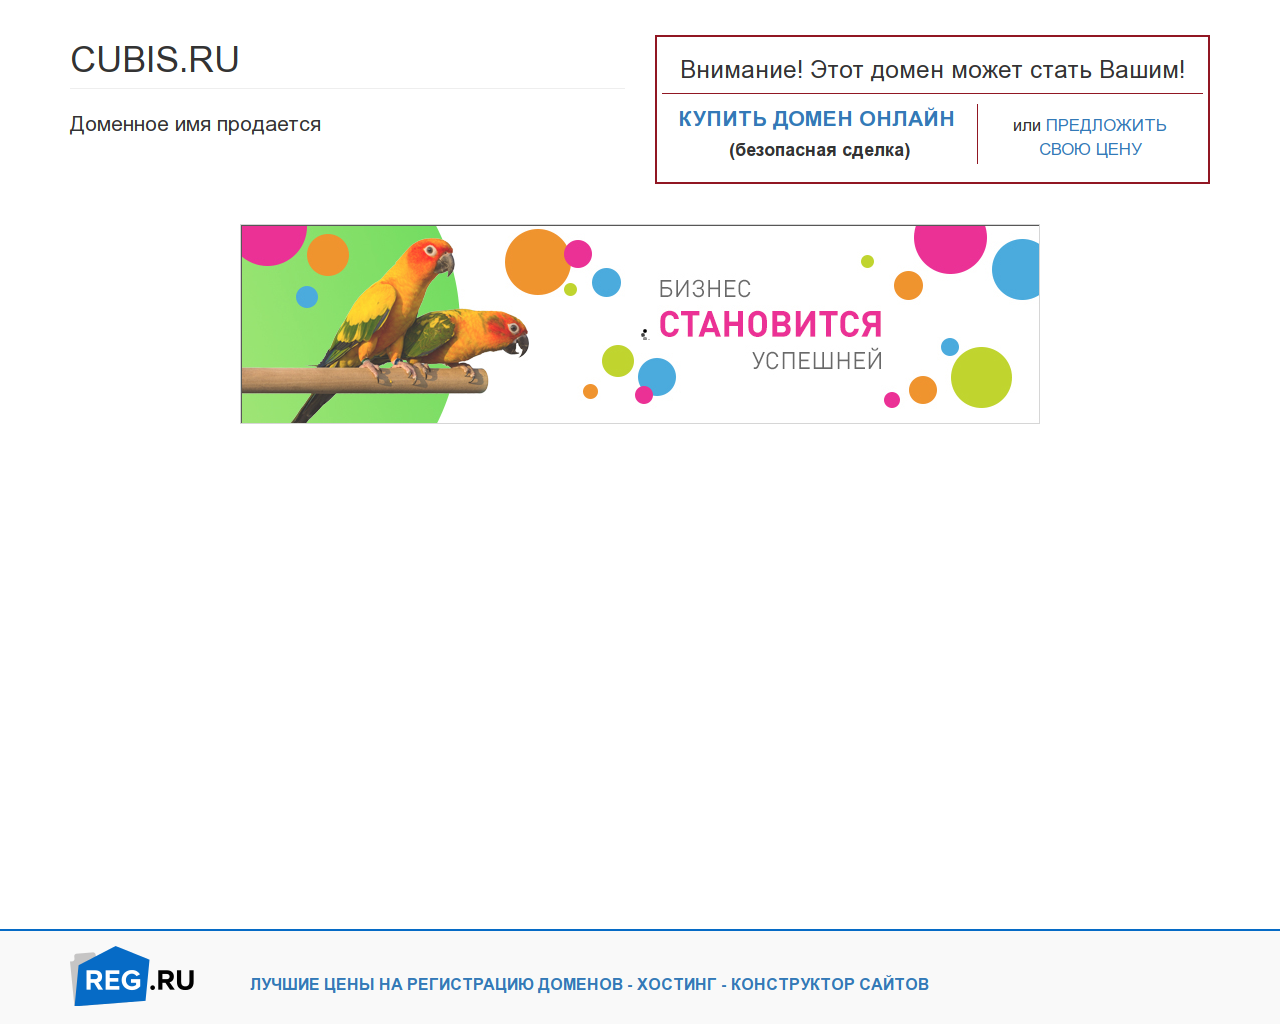 Изображение сайта cubis.ru в разрешении 1280x1024